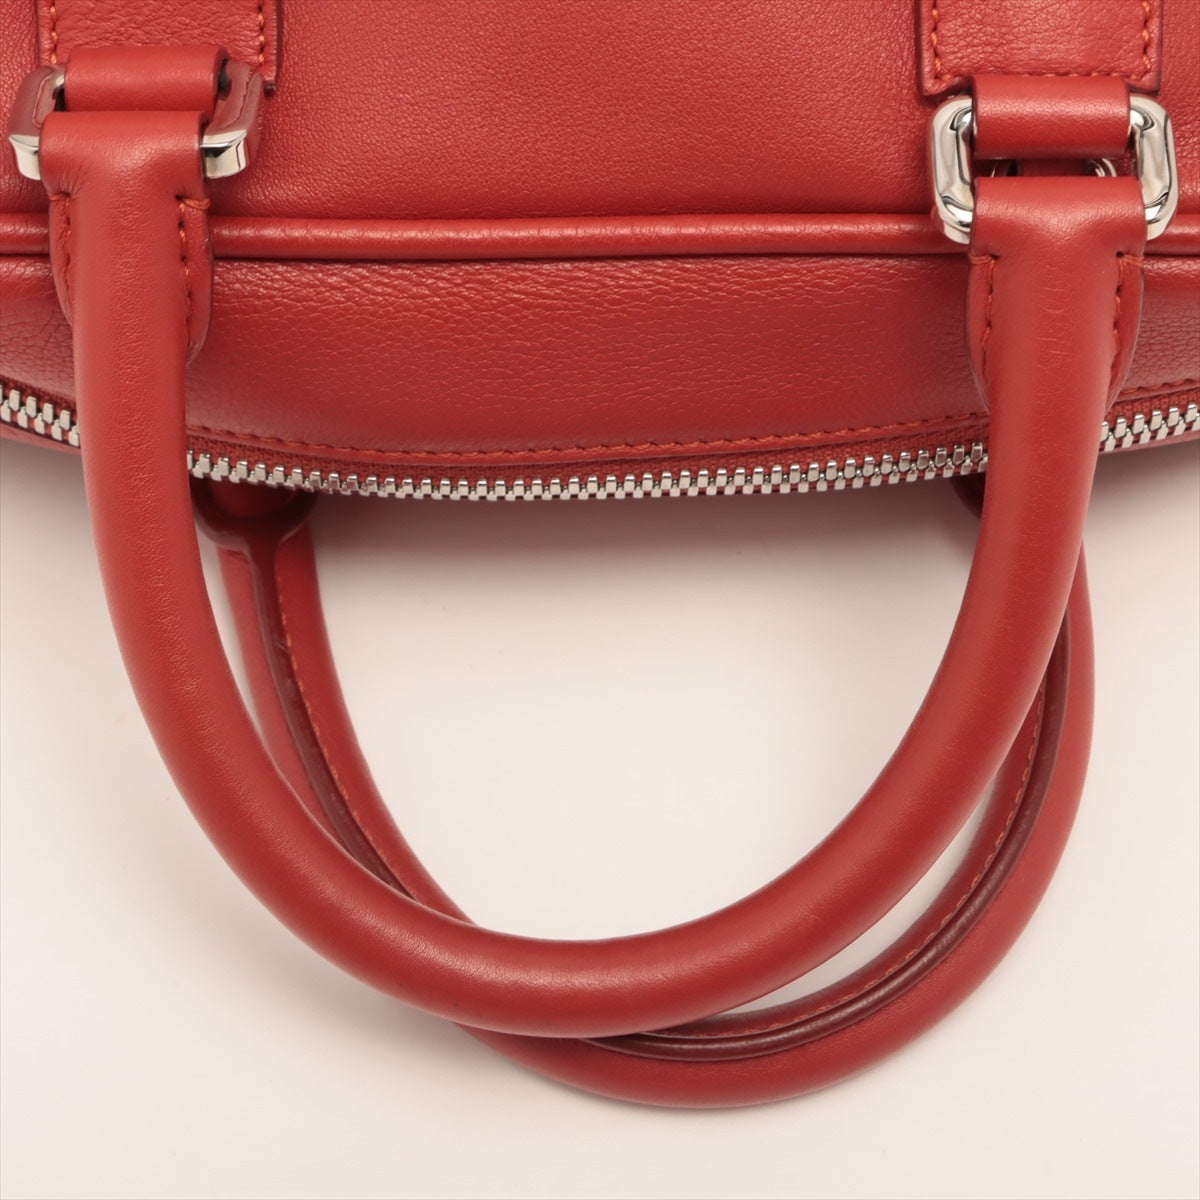 Loewe Amasona 75 Leather 2way handbag Red